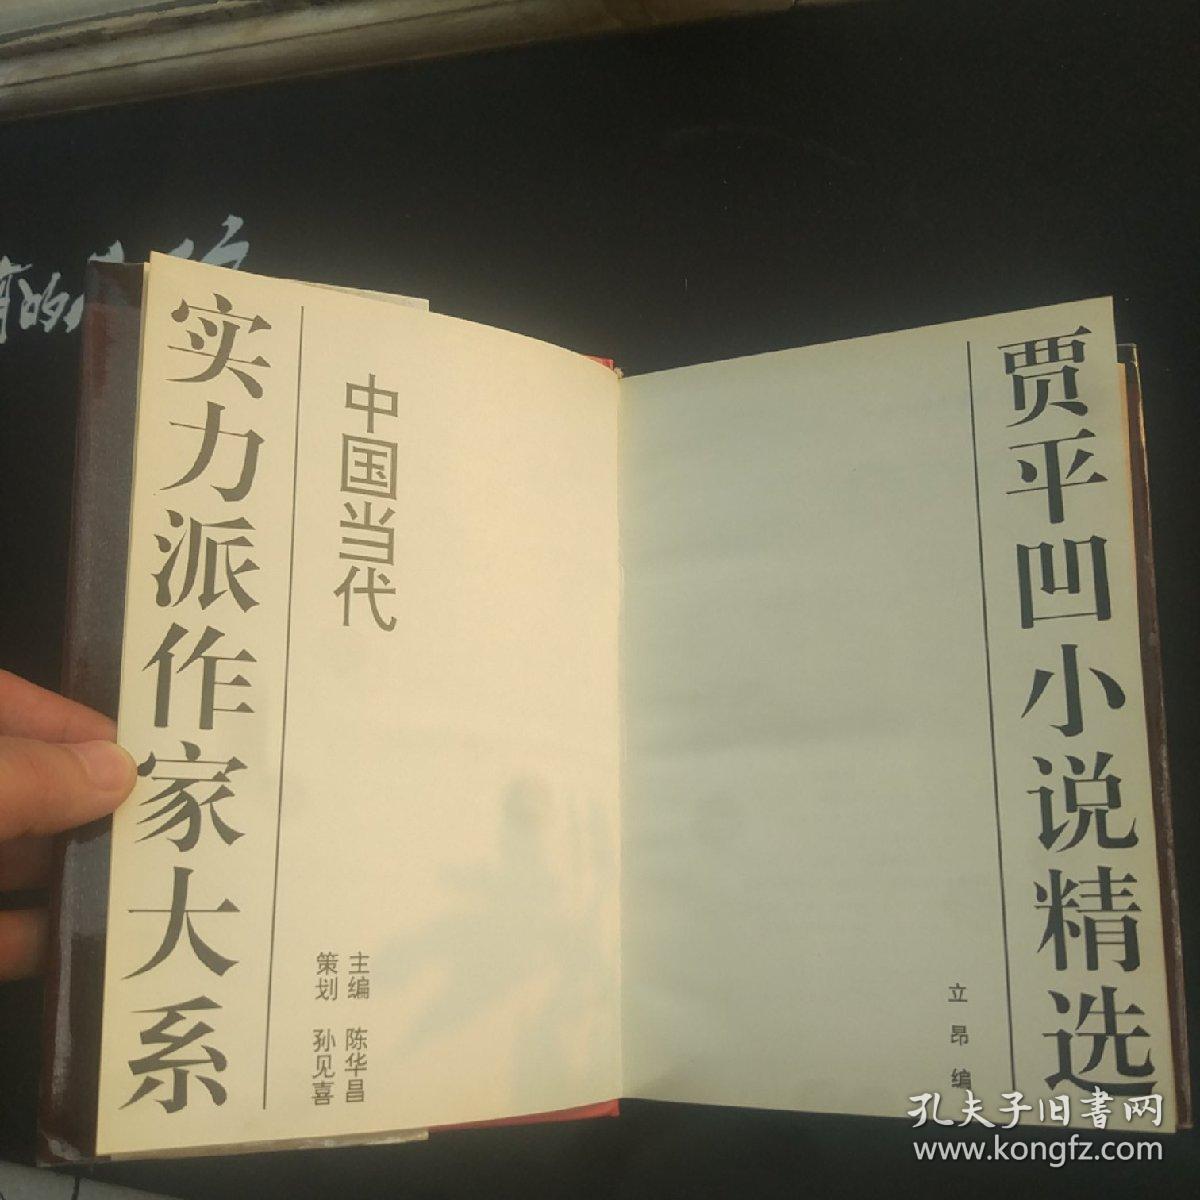 中国当代实力派作家大系3《贾平凹小说精选》一版一印 贾平凹签名钤印孙见喜签名钤印